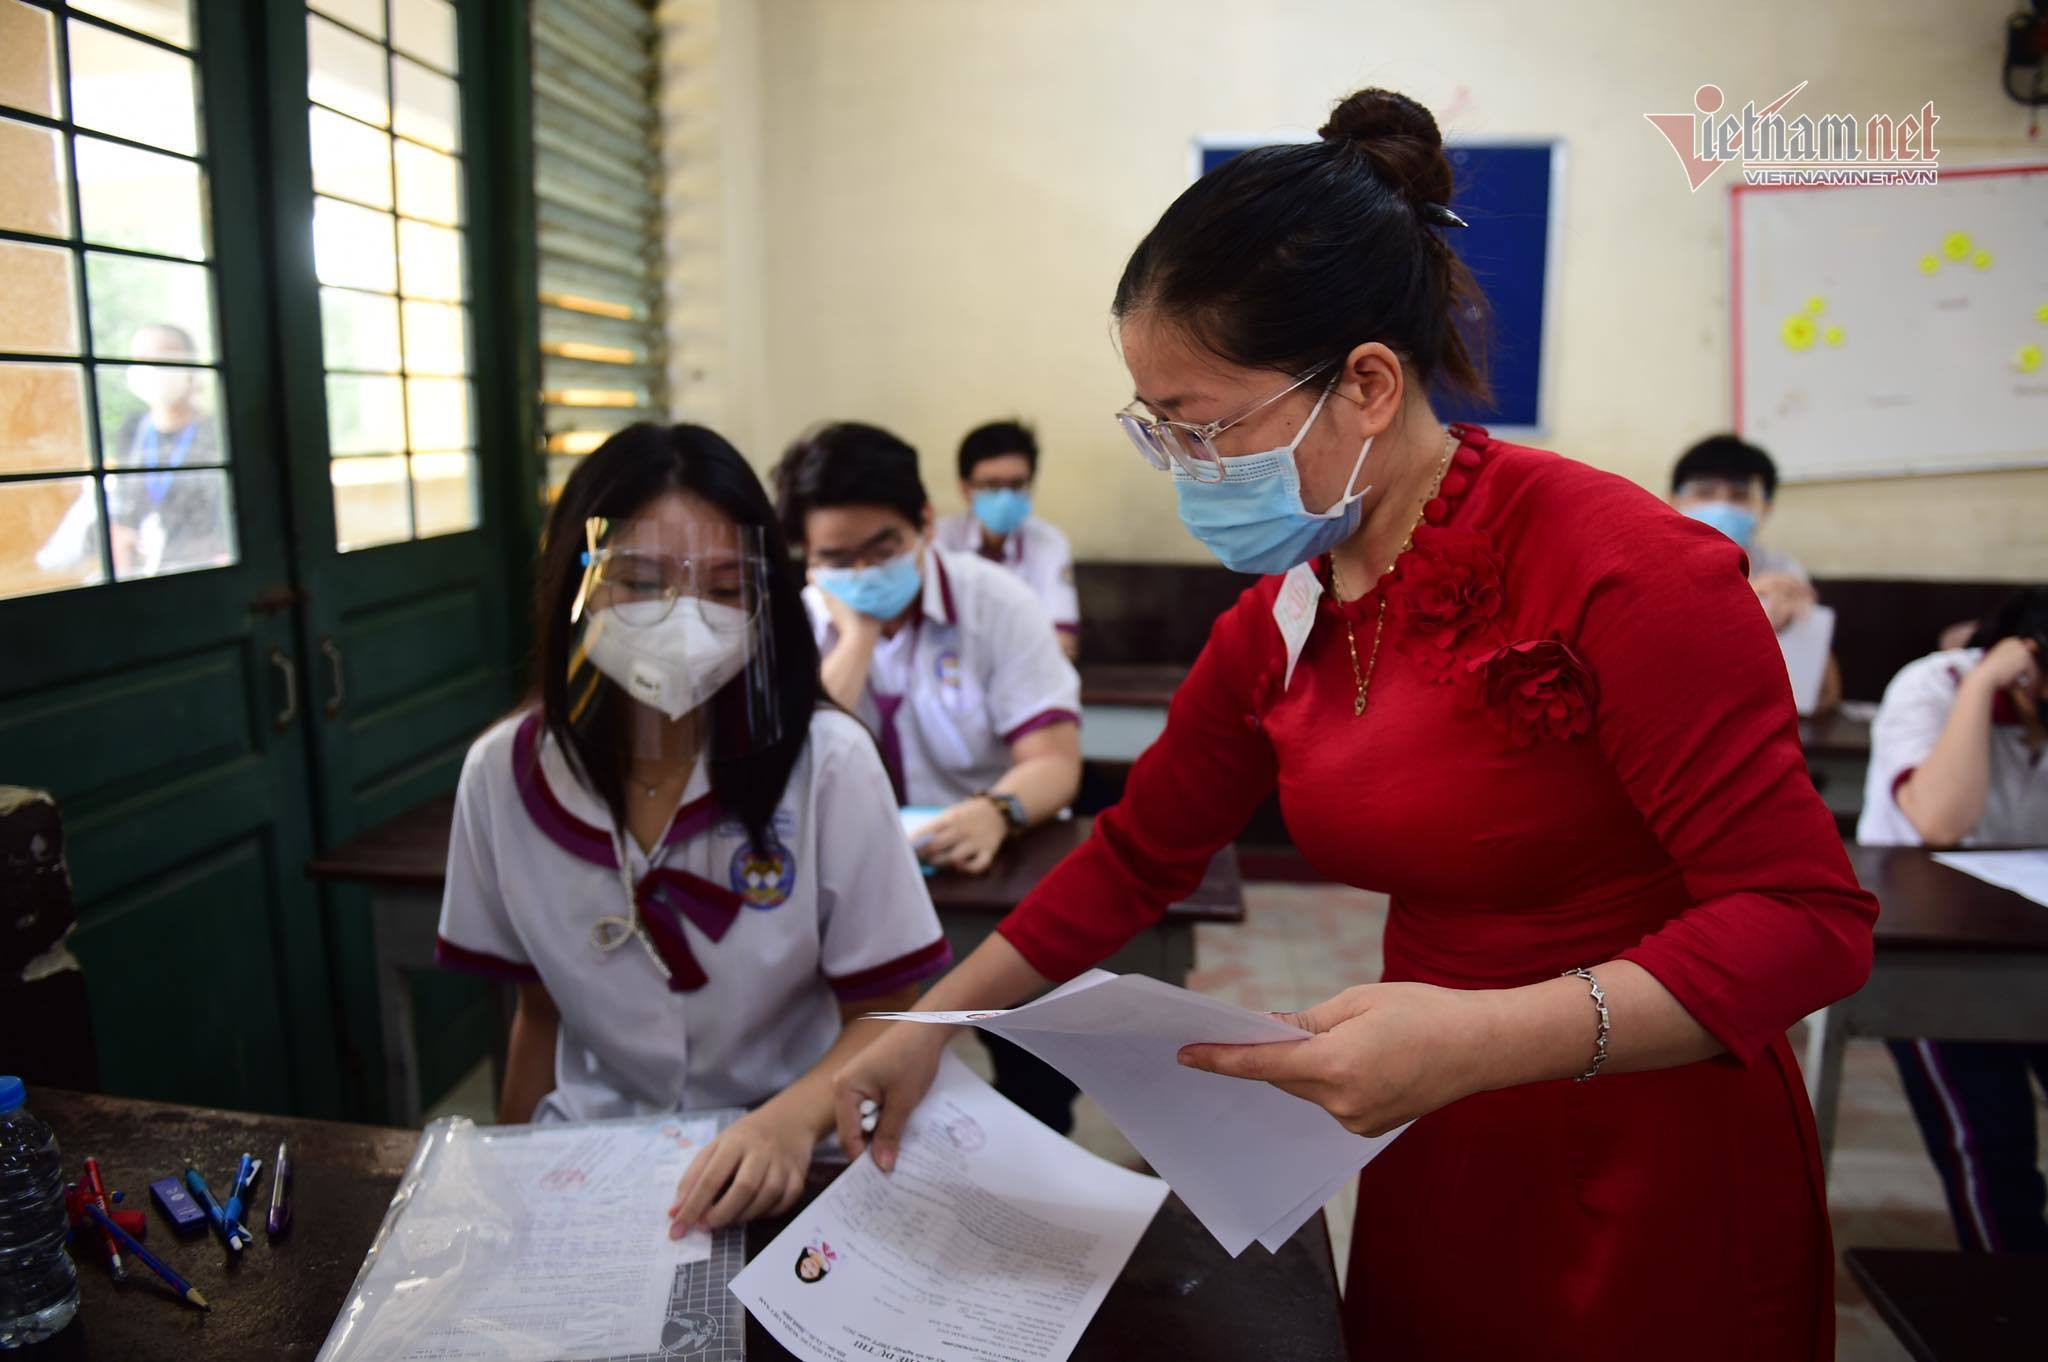 Điểm chuẩn Trường ĐH Sài Gòn 2 năm gần đây biến động như thế nào?